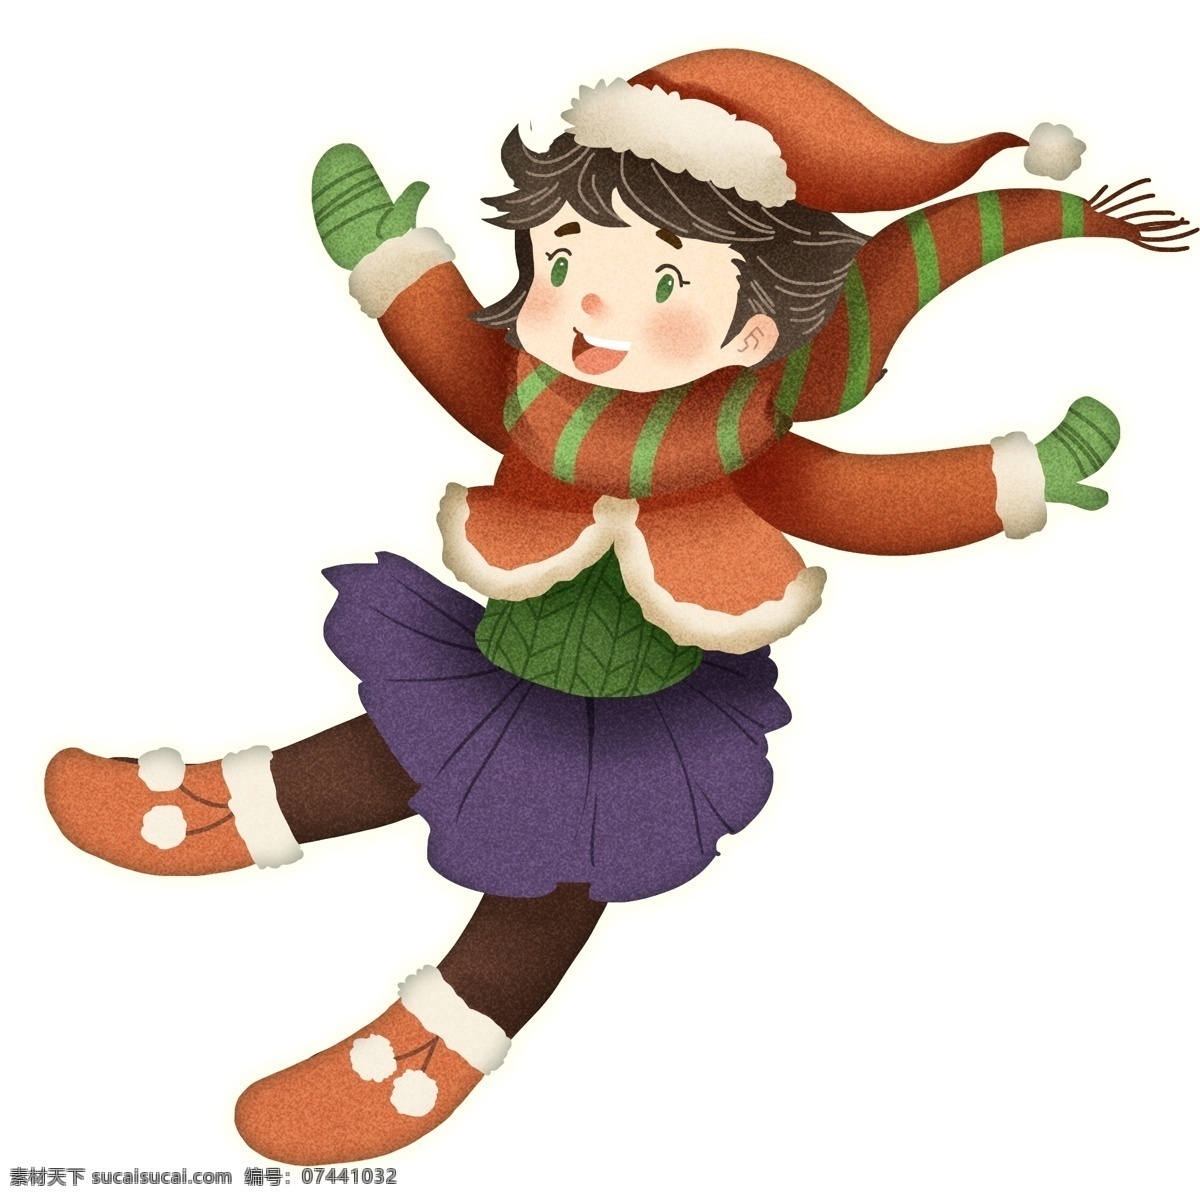 开心 圣诞节 女孩 卡通 人物 可爱 快乐 人物设计 插画设计